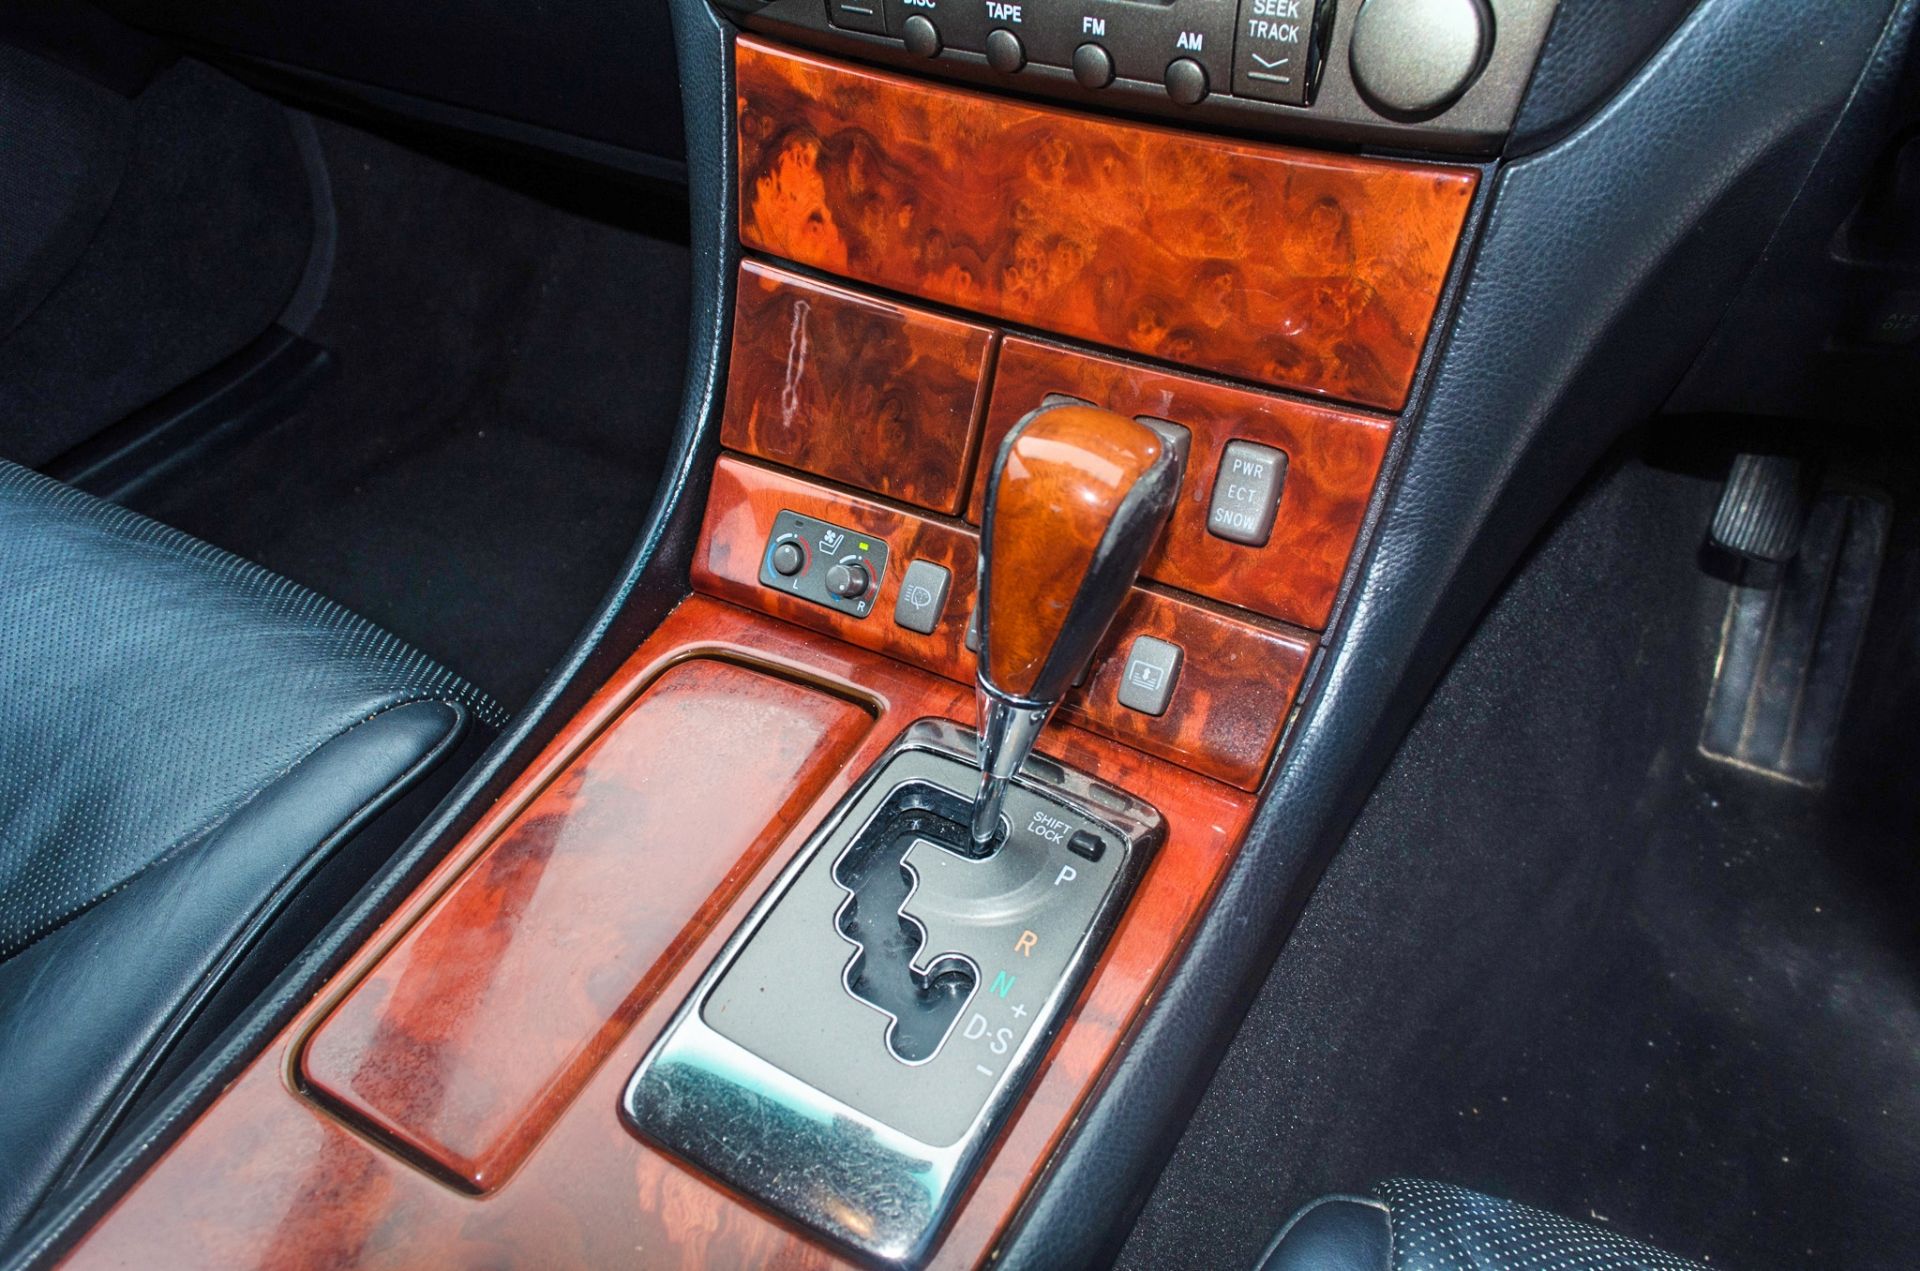 2004 Lexus LS 430 4.3 litre V8 4 door saloon car - Image 44 of 54